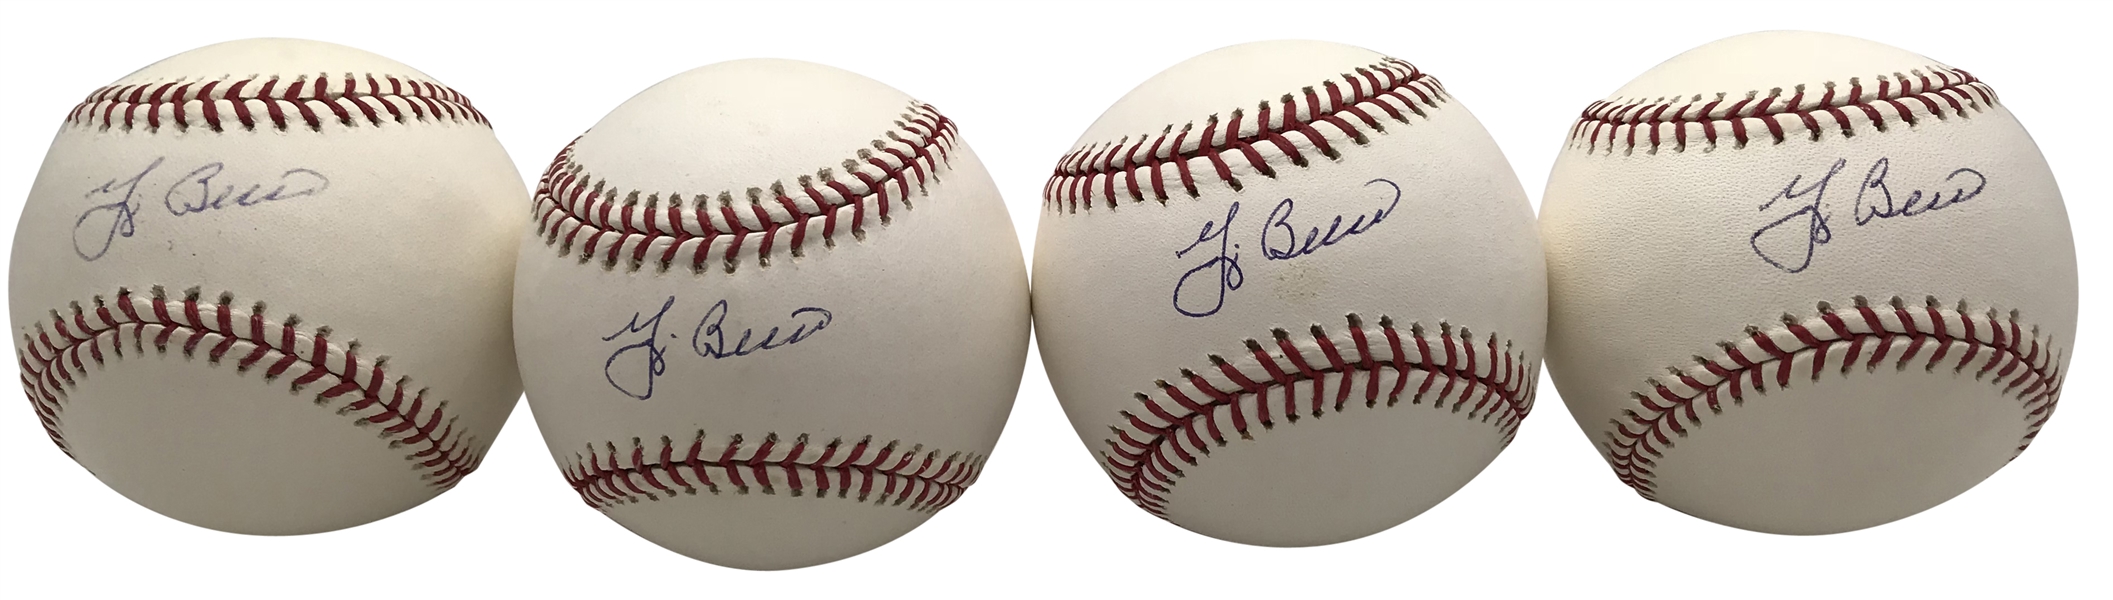 Yogi Berra Lot of Four (4) Signed OML Baseballs (Steiner Sports)